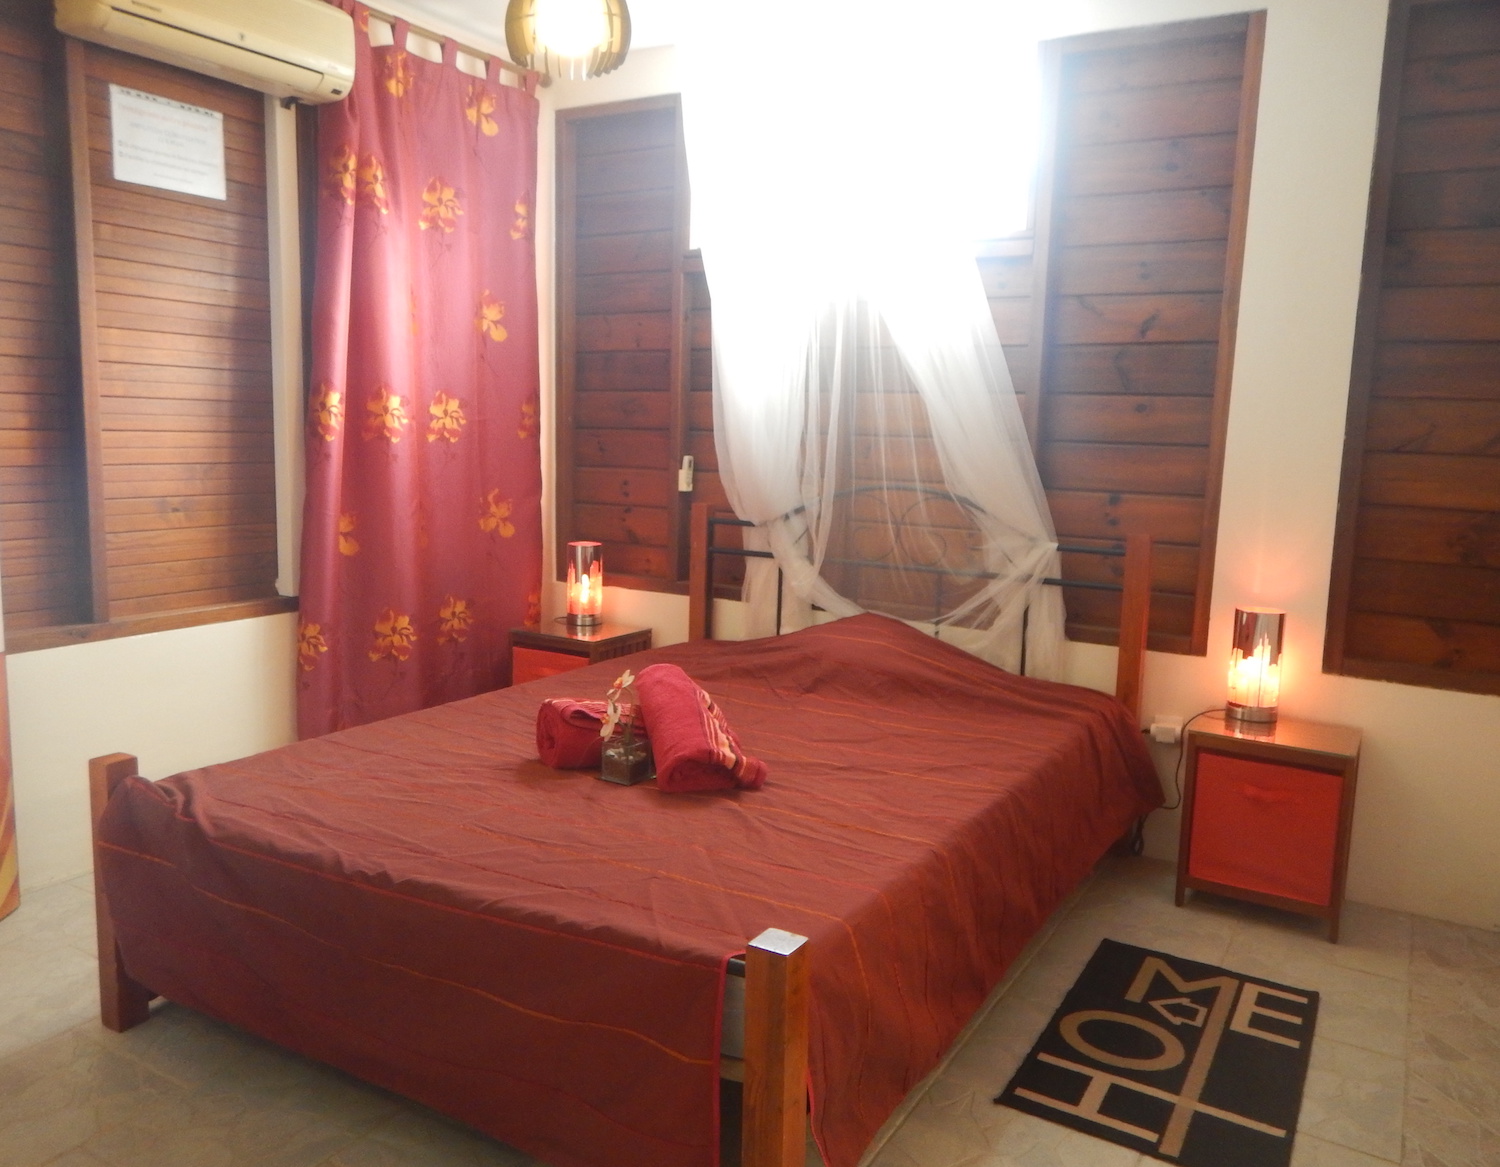 Location de vacances en Martinique appartements meublés à St-Joseph Les joyaux de Balata